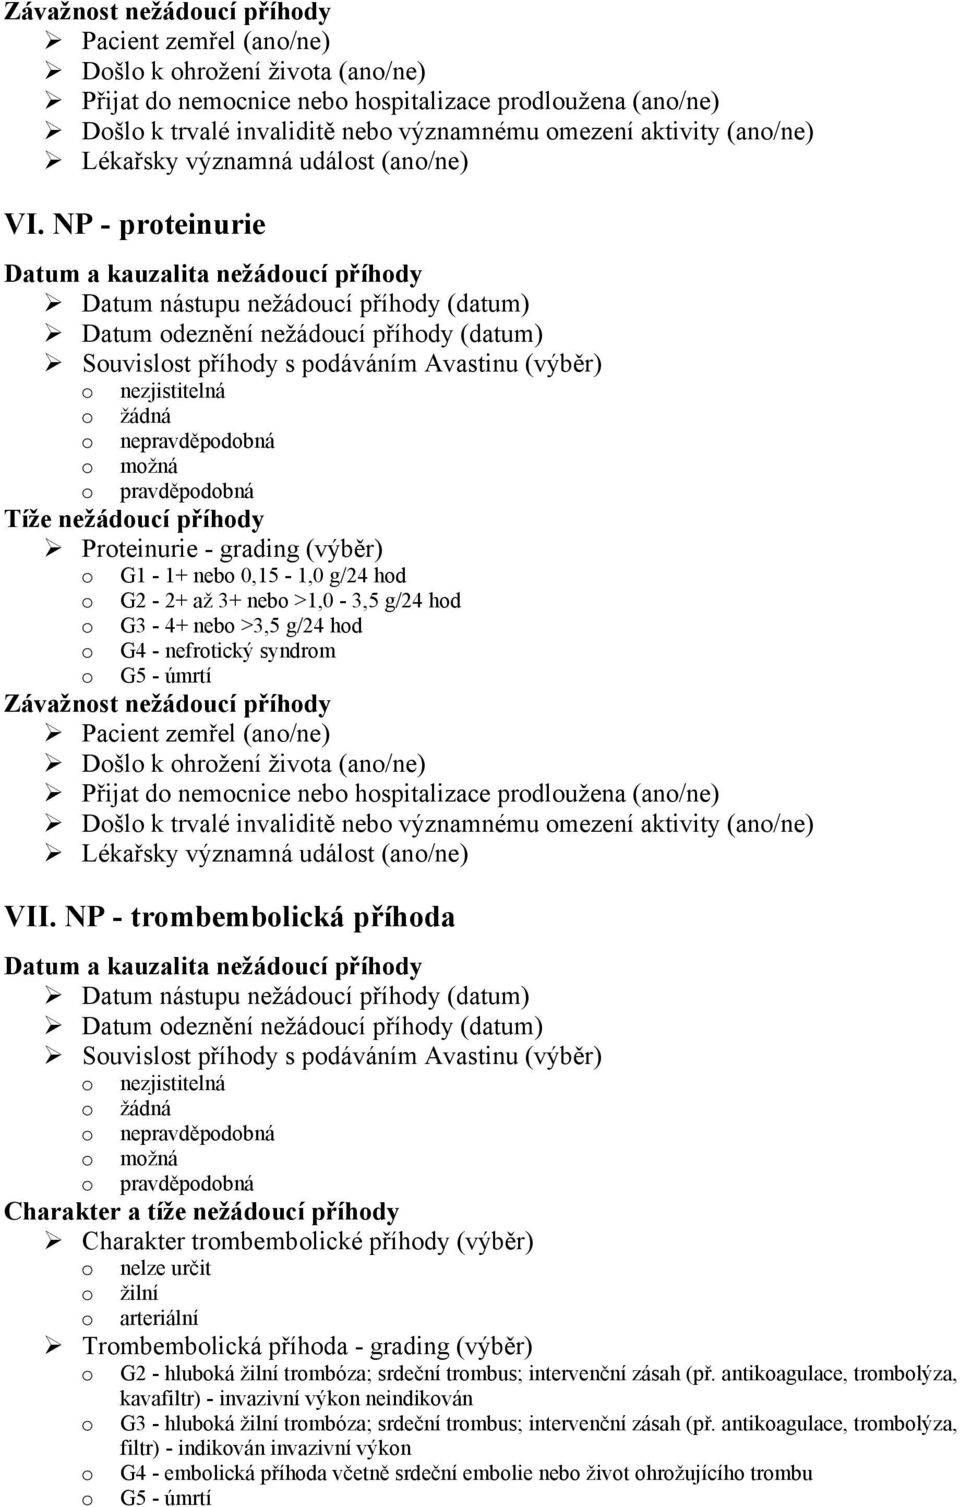 NP - trombembolická příhoda Charakter trombembolické příhody (výběr) o nelze určit o žilní o arteriální Trombembolická příhoda - grading (výběr) o G2 - hluboká žilní